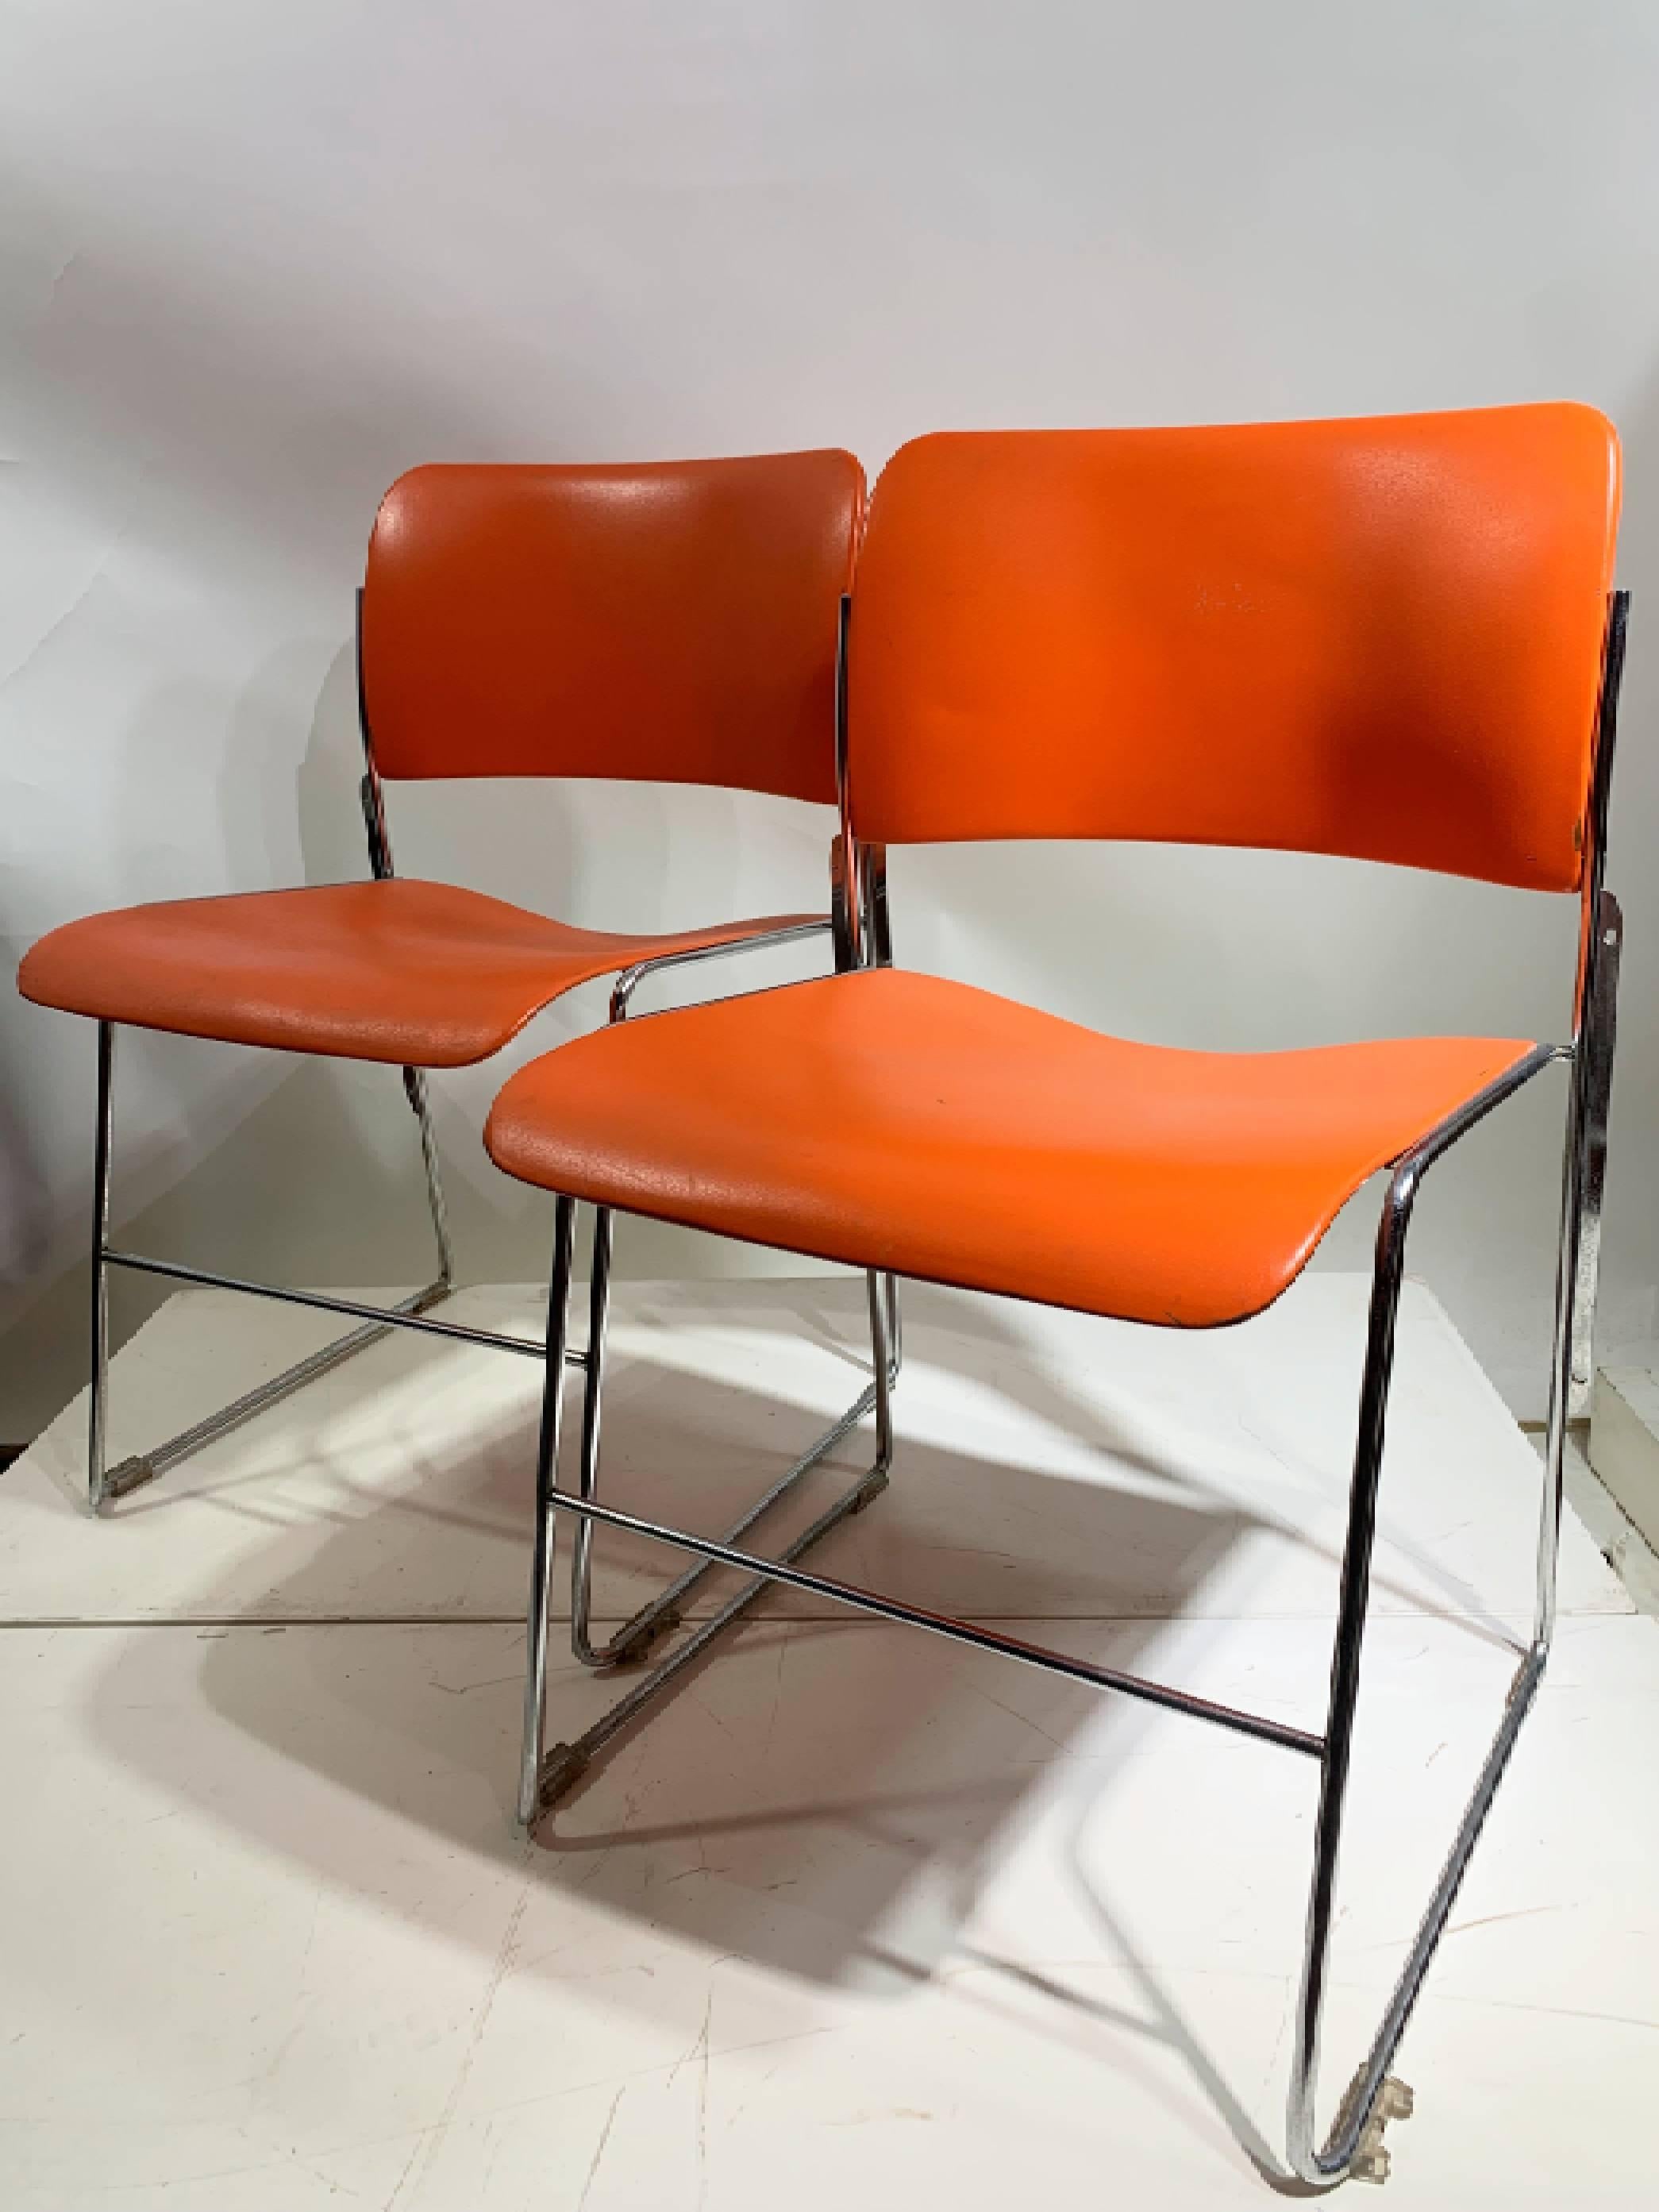 Der 40/4 Chair, ein zeitloses Meisterwerk, entworfen von David Rowland und hergestellt von der renommierten General Fireproofing Company. Dieser ikonische Stuhl wird für sein außergewöhnliches Design gefeiert, das es ermöglicht, 40 Stühle auf einer